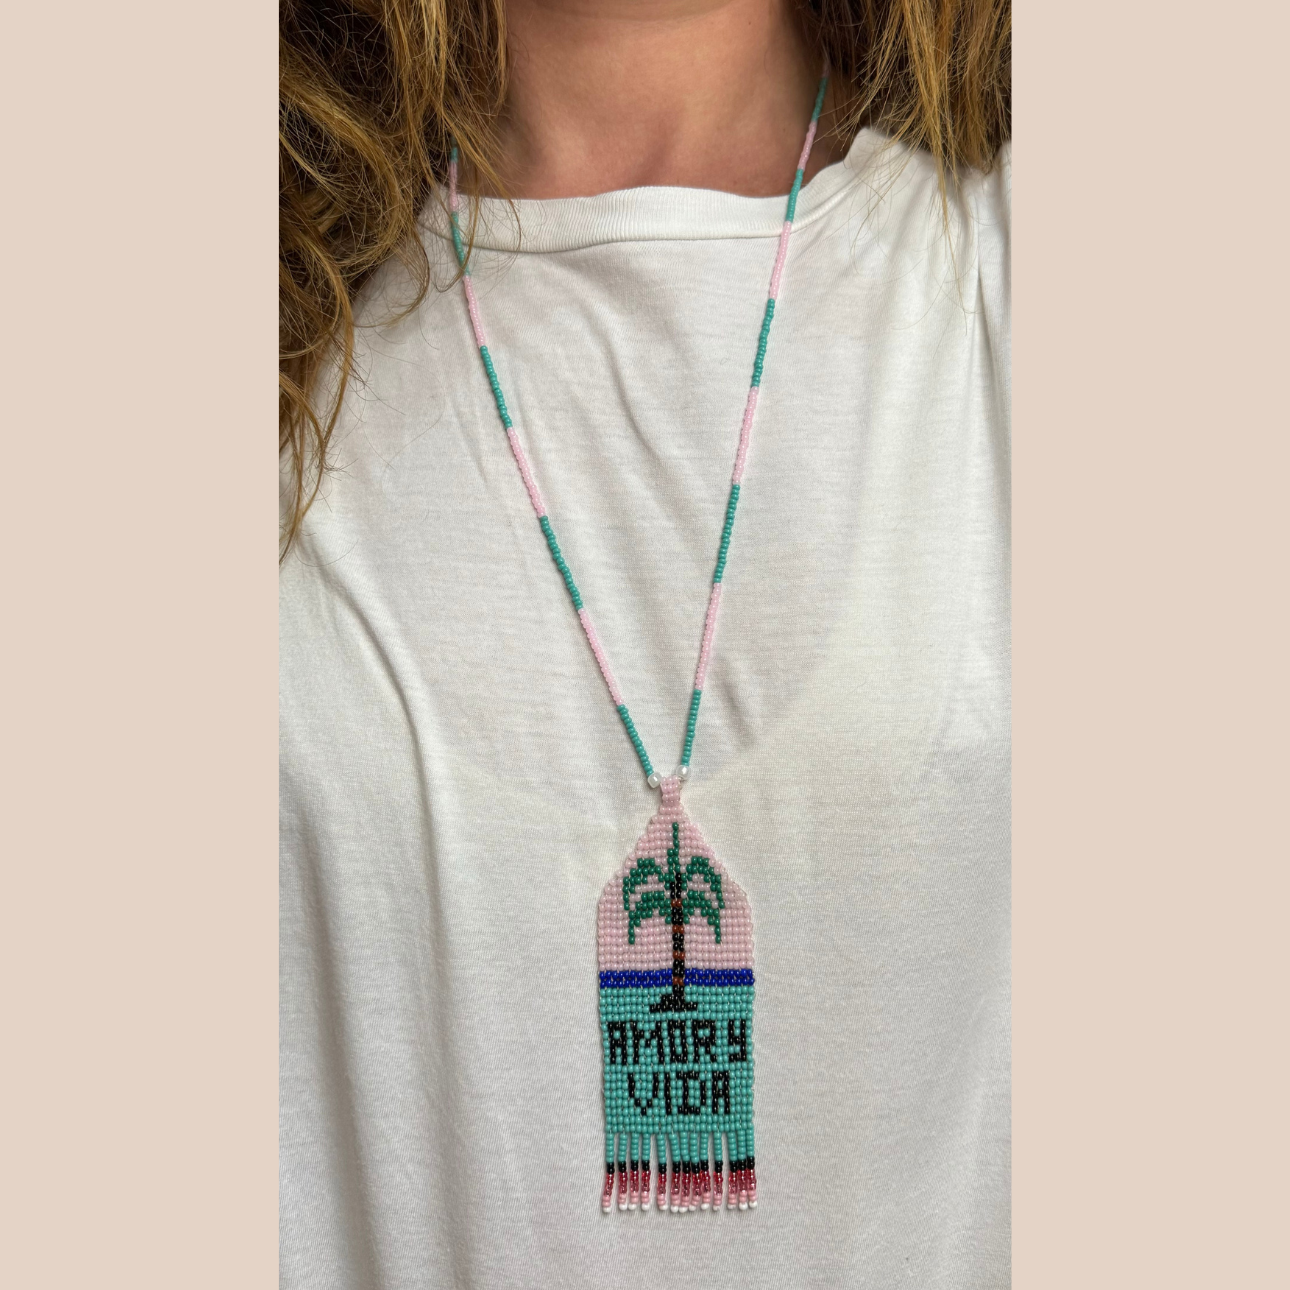  Image du collier motif palmier, inscription "AMOR Y VIDA" de Maison Badigo, collier en perles multicolore unique et tendance